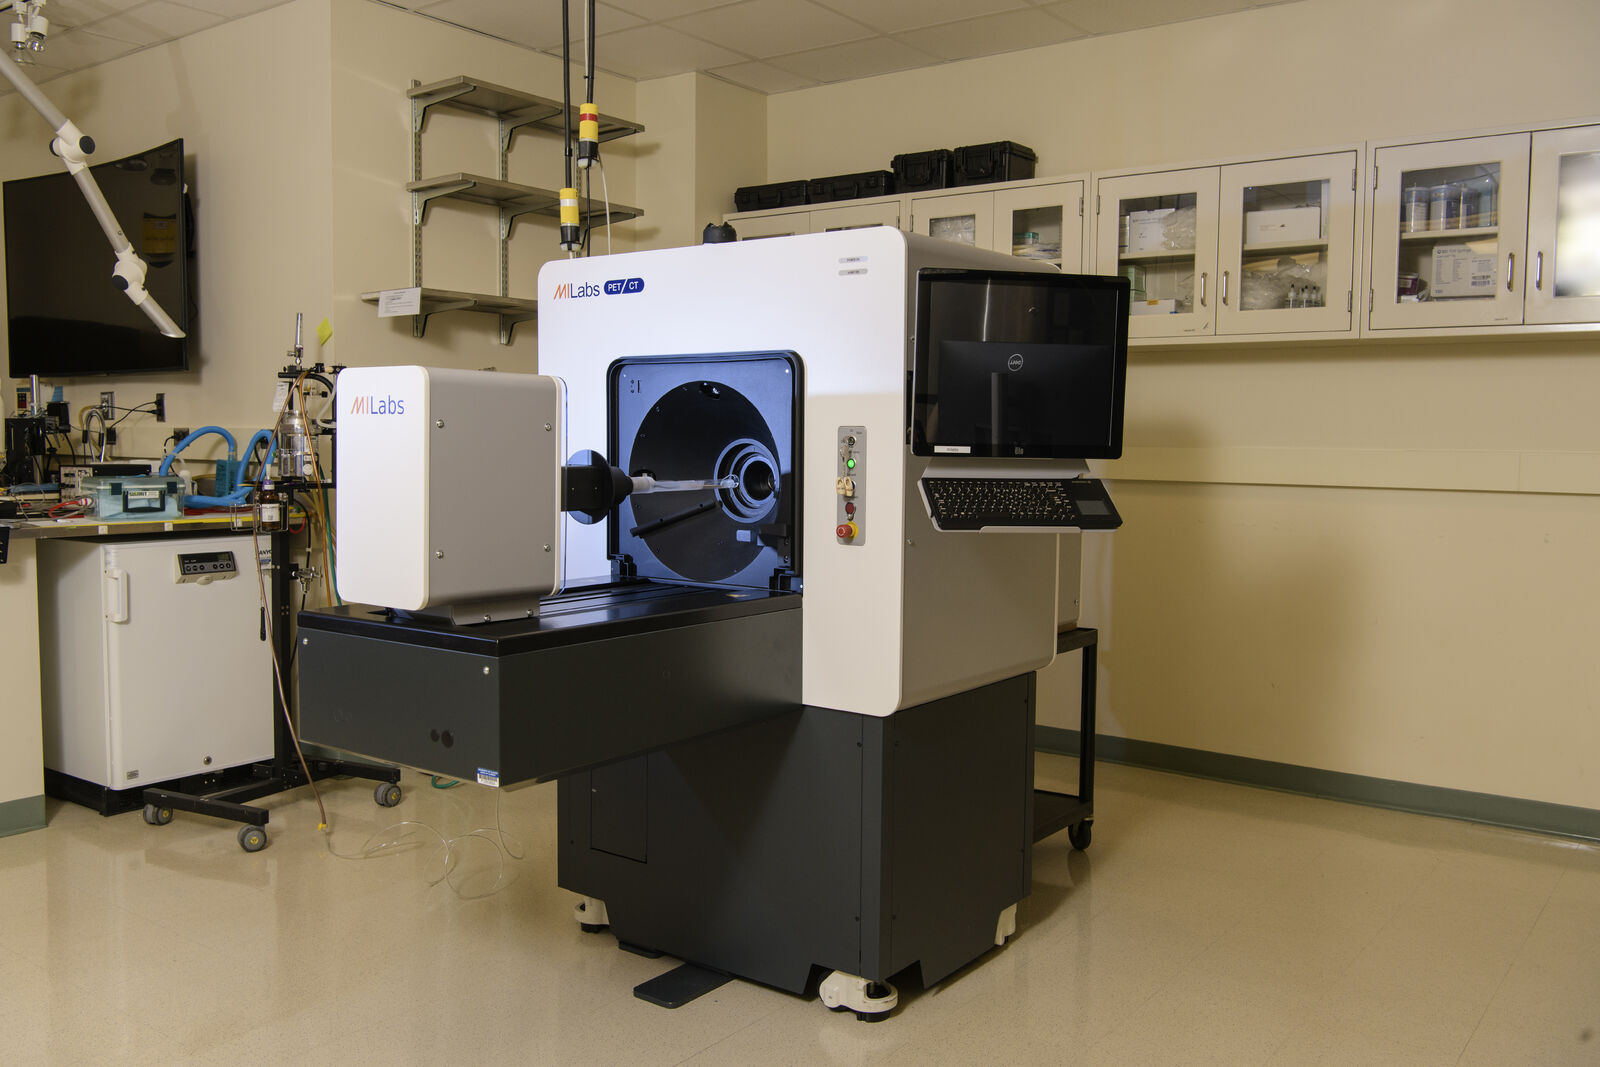 MILabs U-PET7-CT scanner